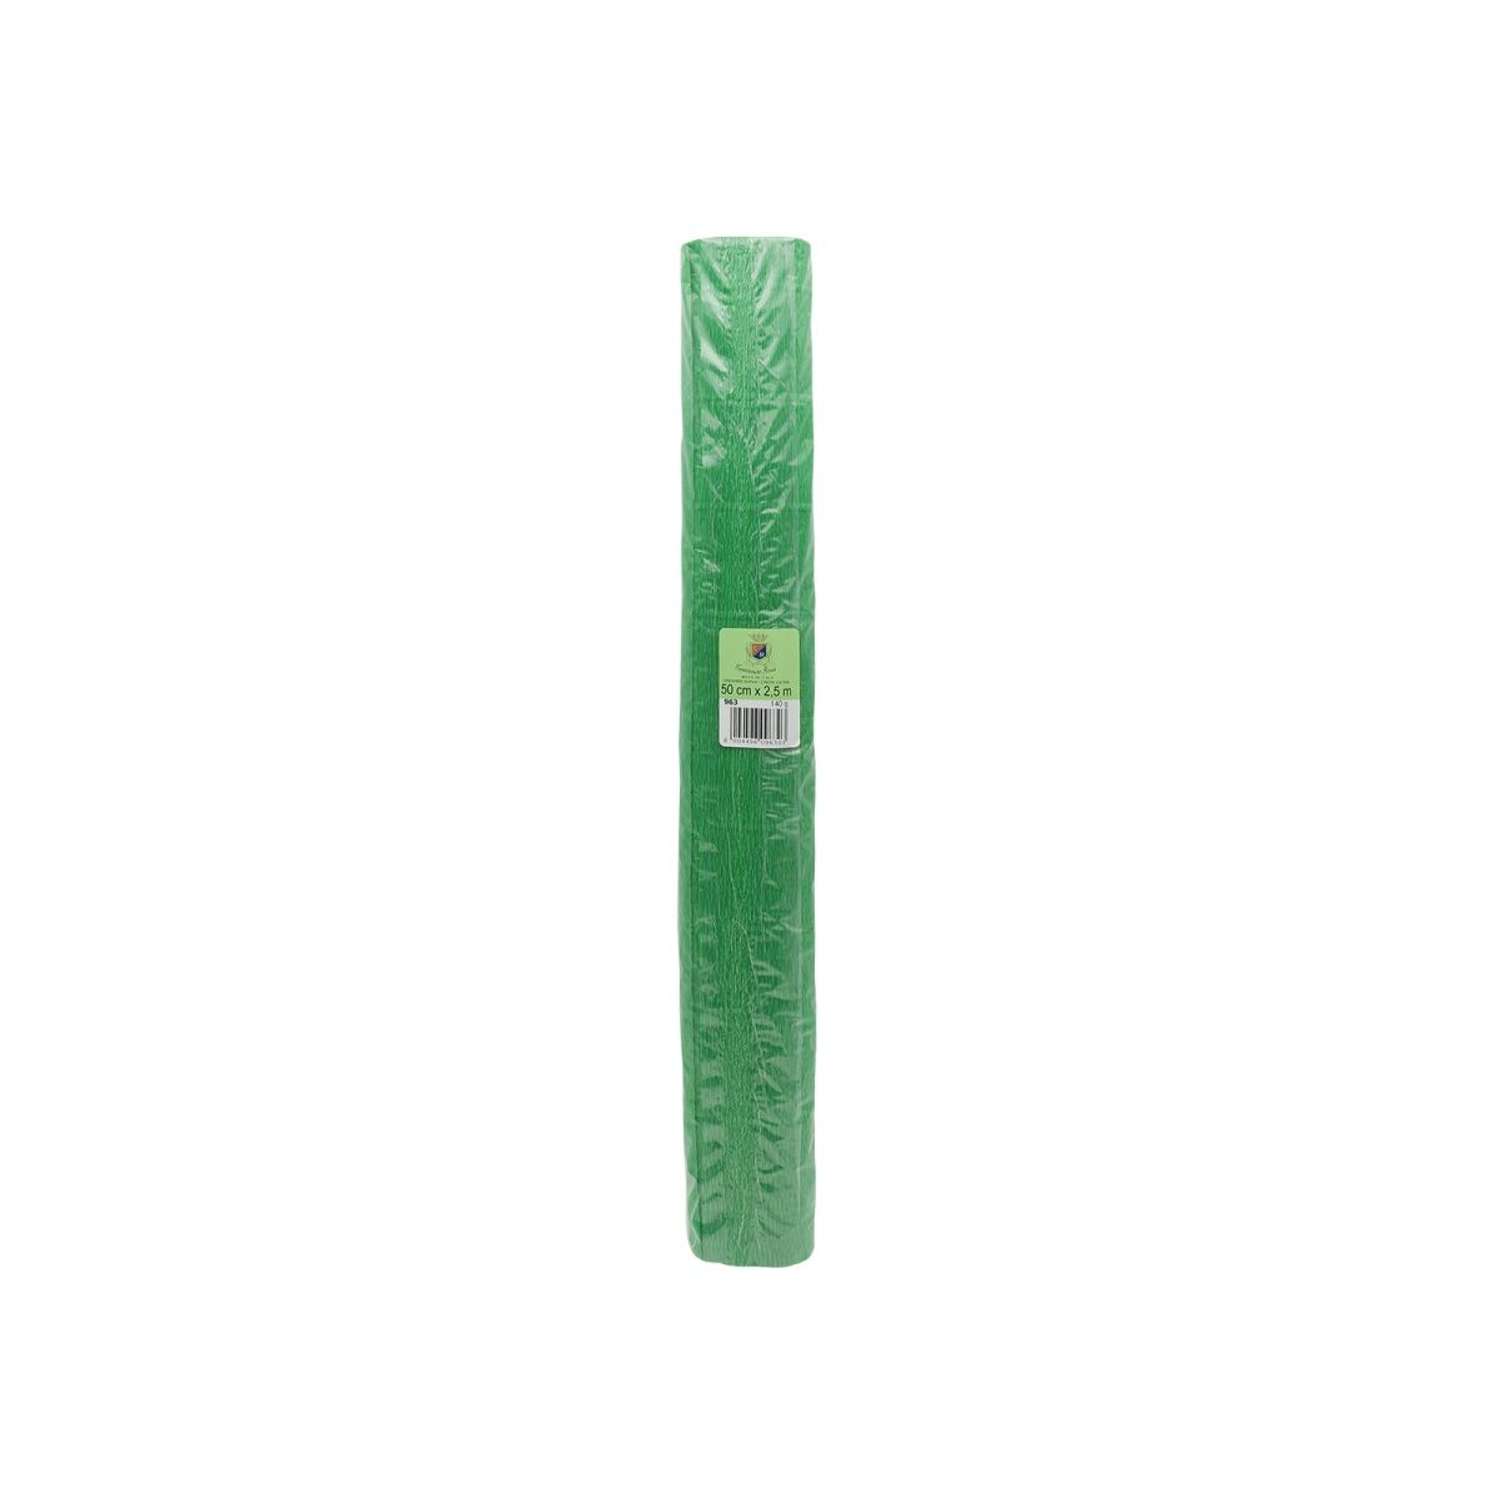 Бумага Айрис гофрированная креповая для творчества 50 см х 2.5 м 140 г зеленая - фото 4